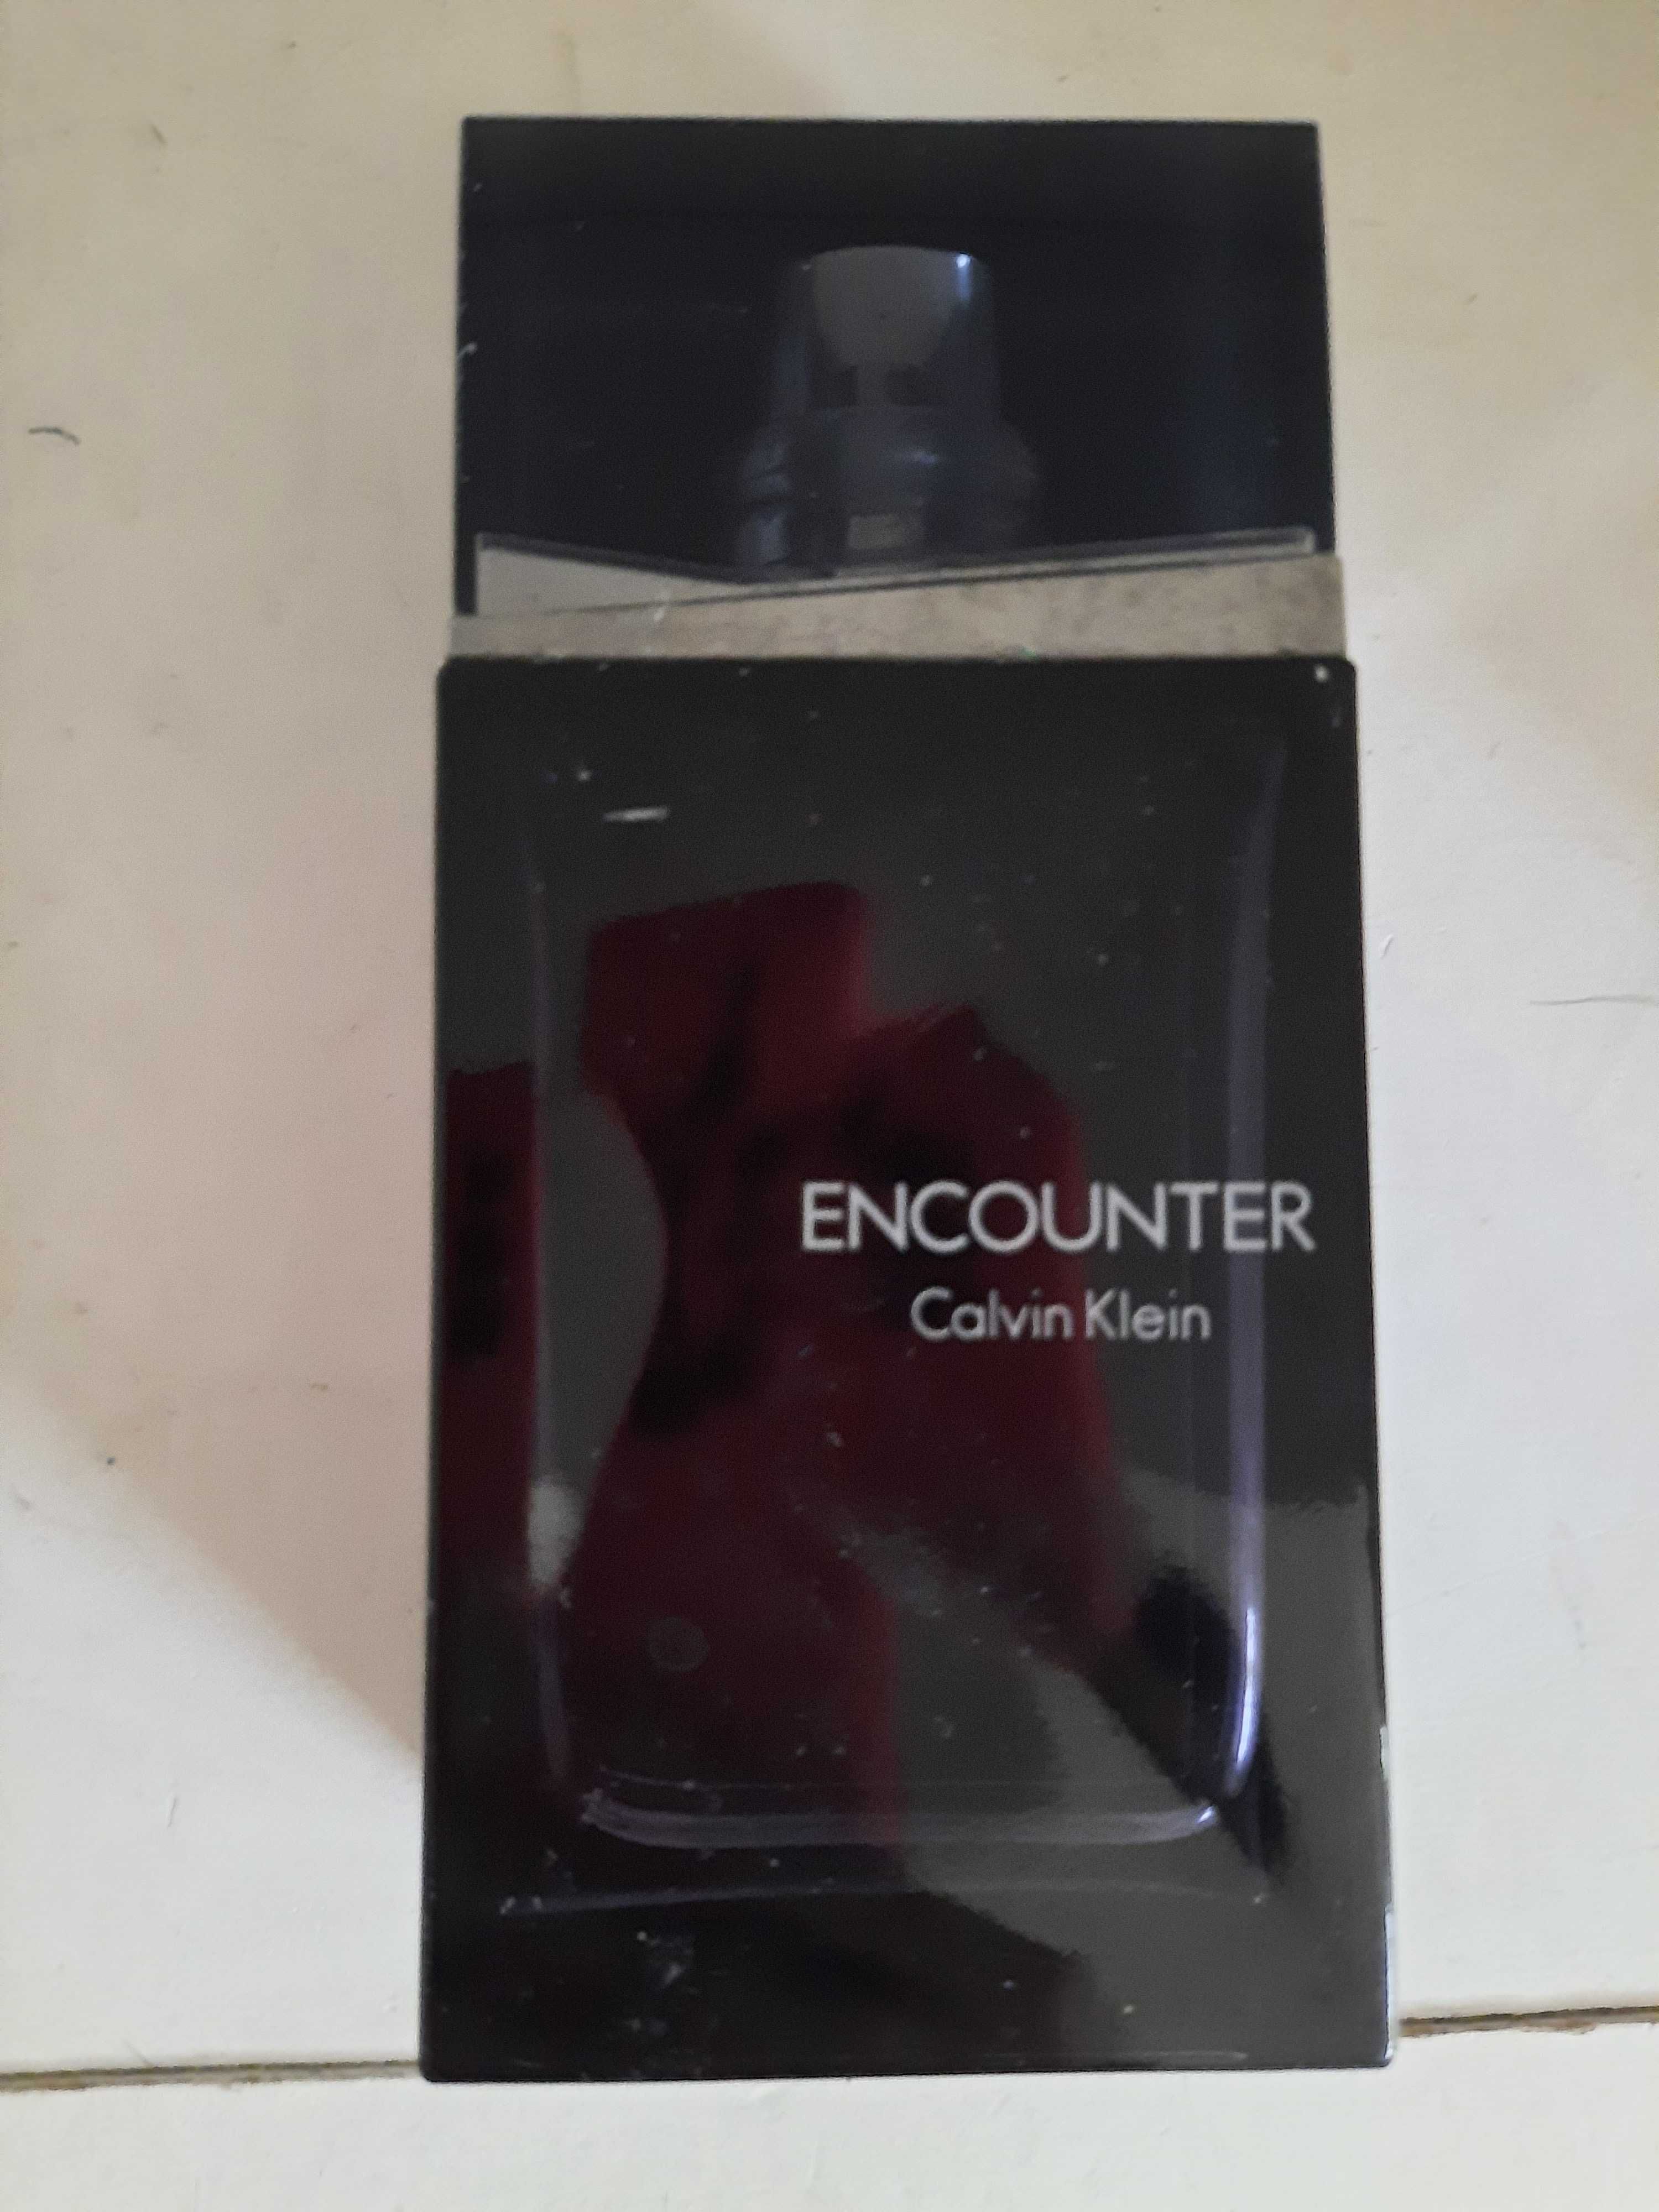 Vand parfum Encounter de la Calvin Klein